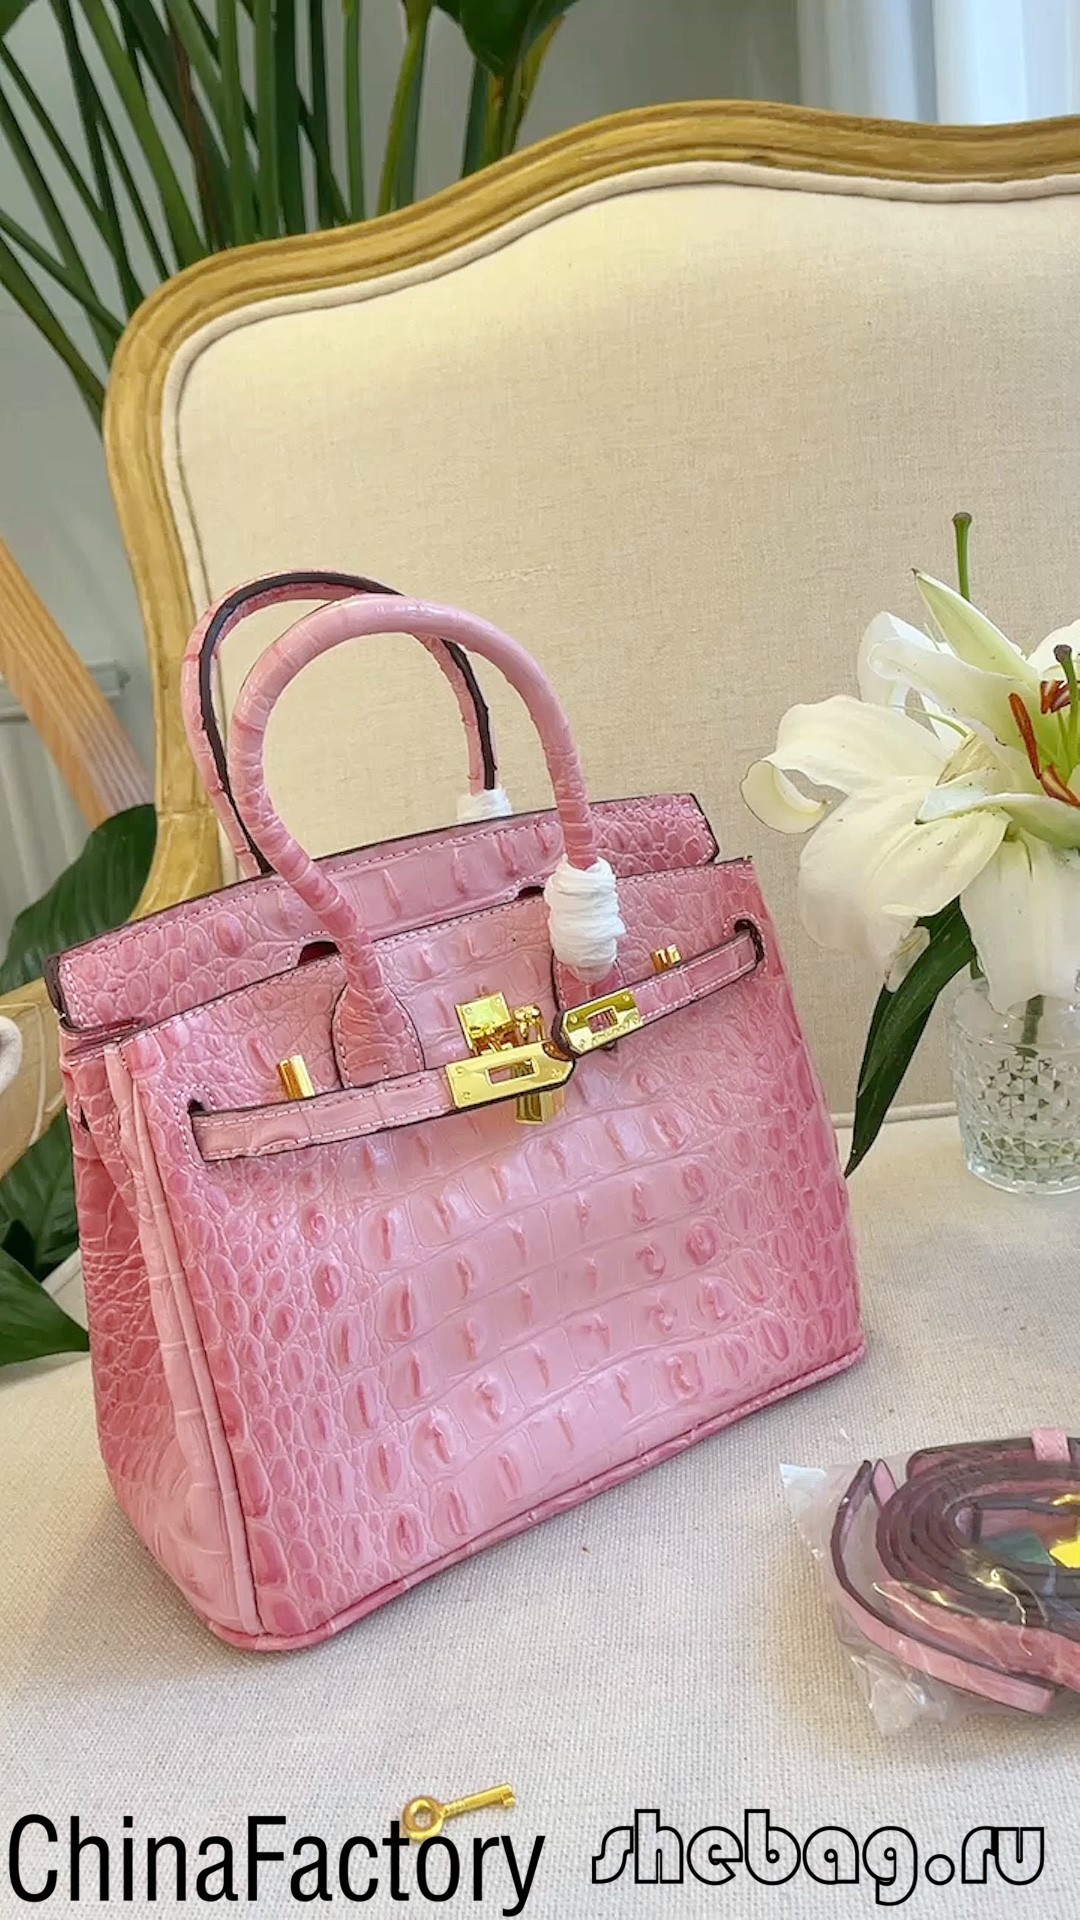 Højkvalitets birkin taske replika billige sælgere (2022 opdateret)-Bedste kvalitet Fake Louis Vuitton Bag Online Store, Replica designer bag ru